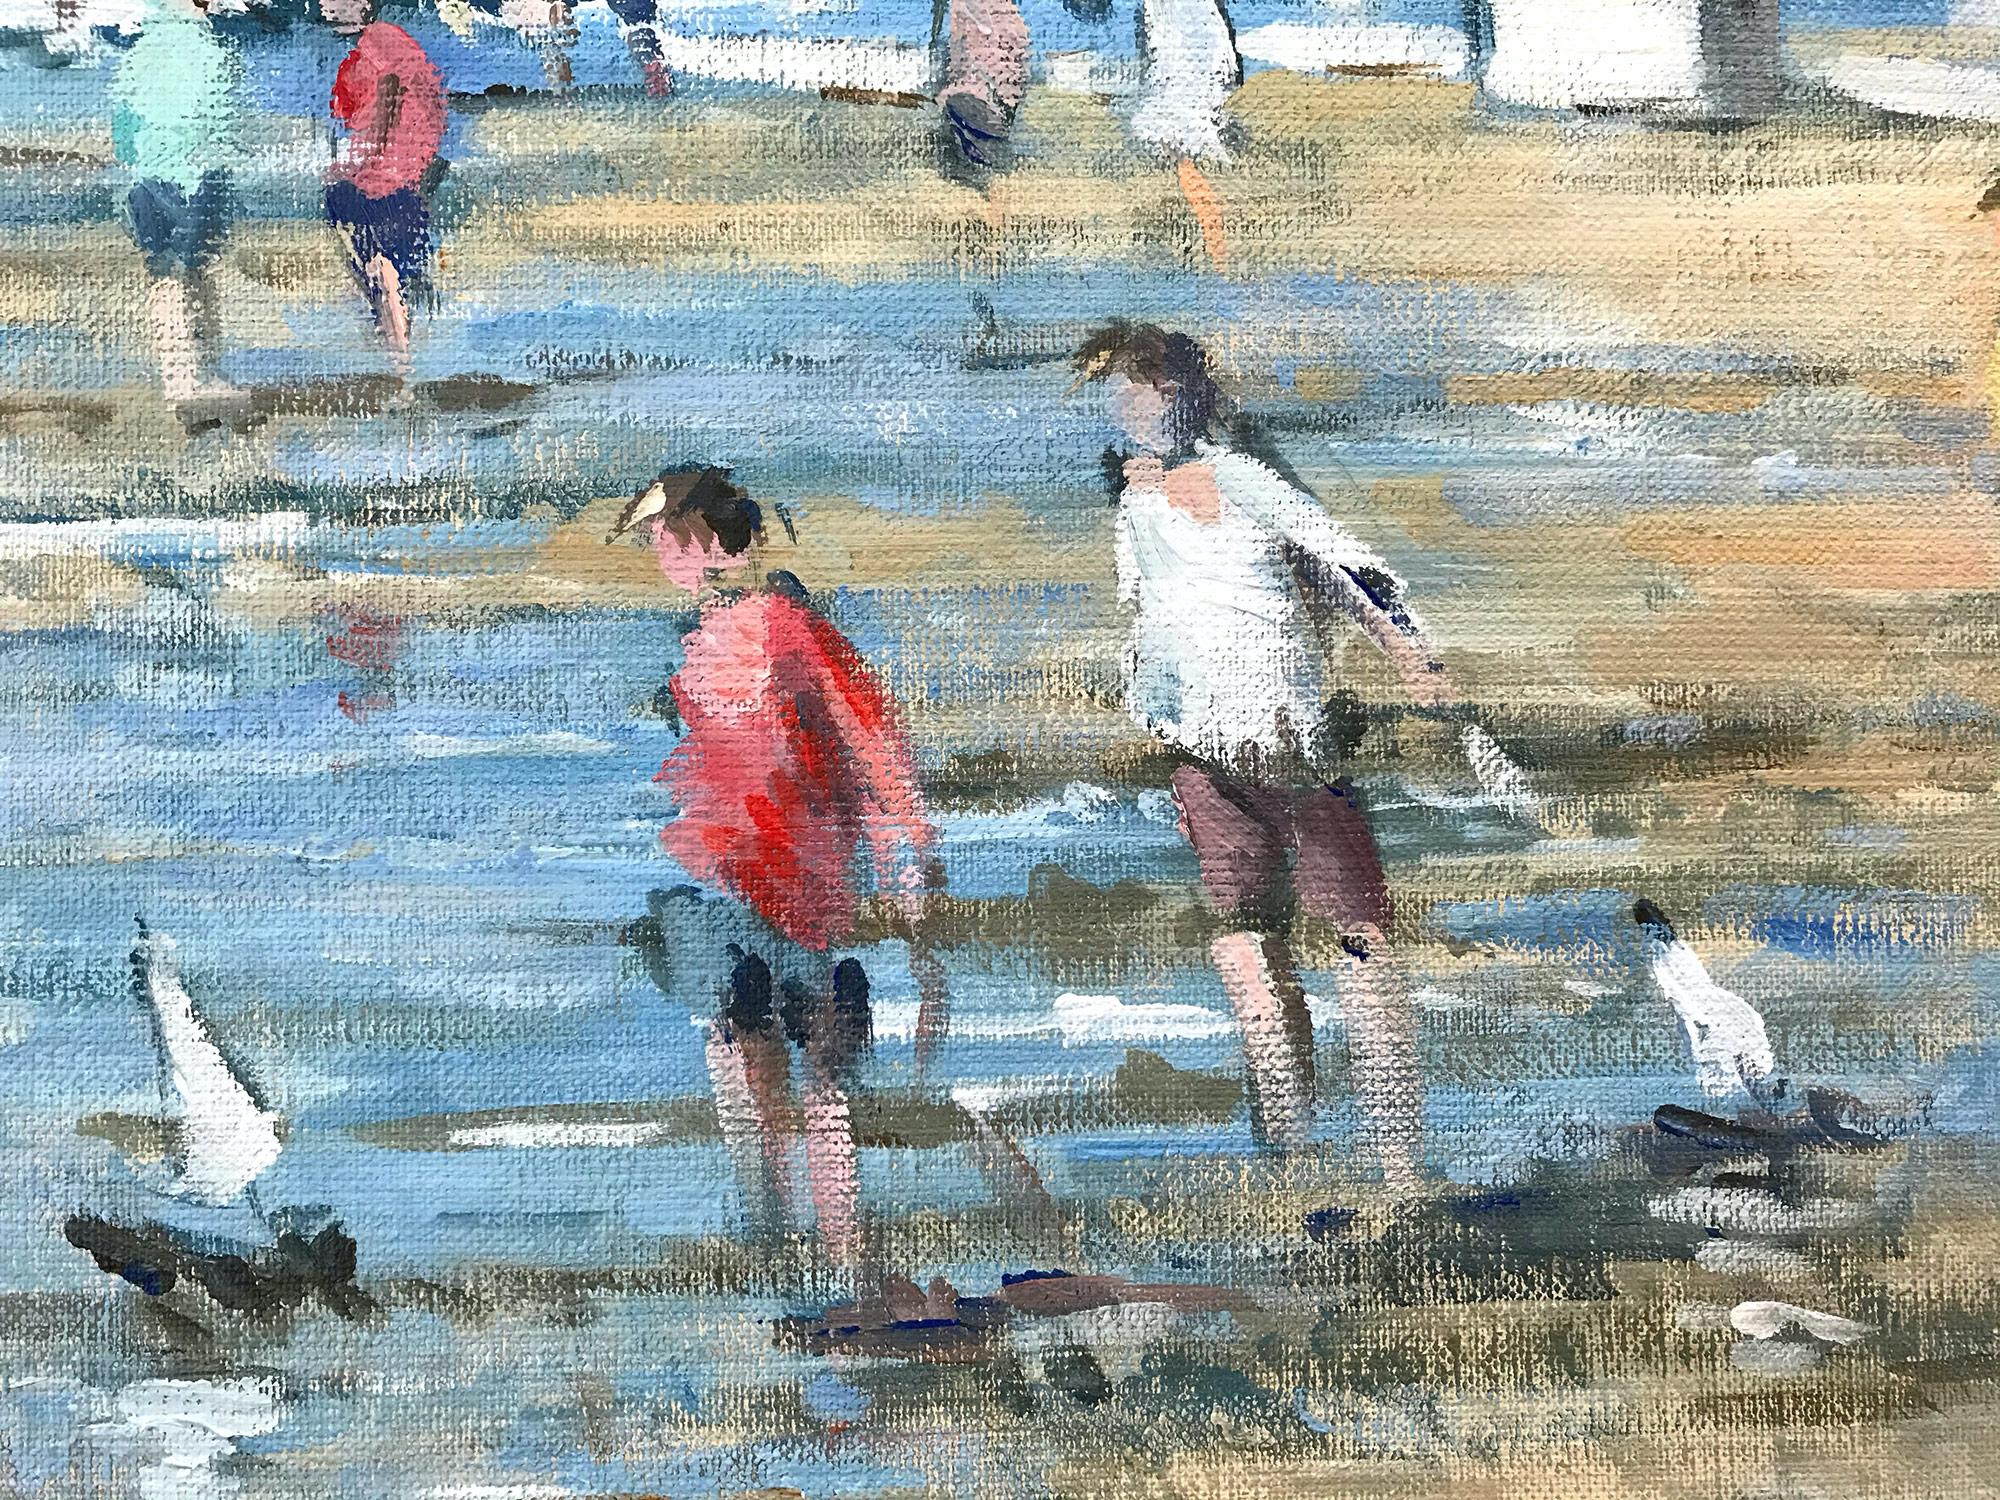 beach scene painting